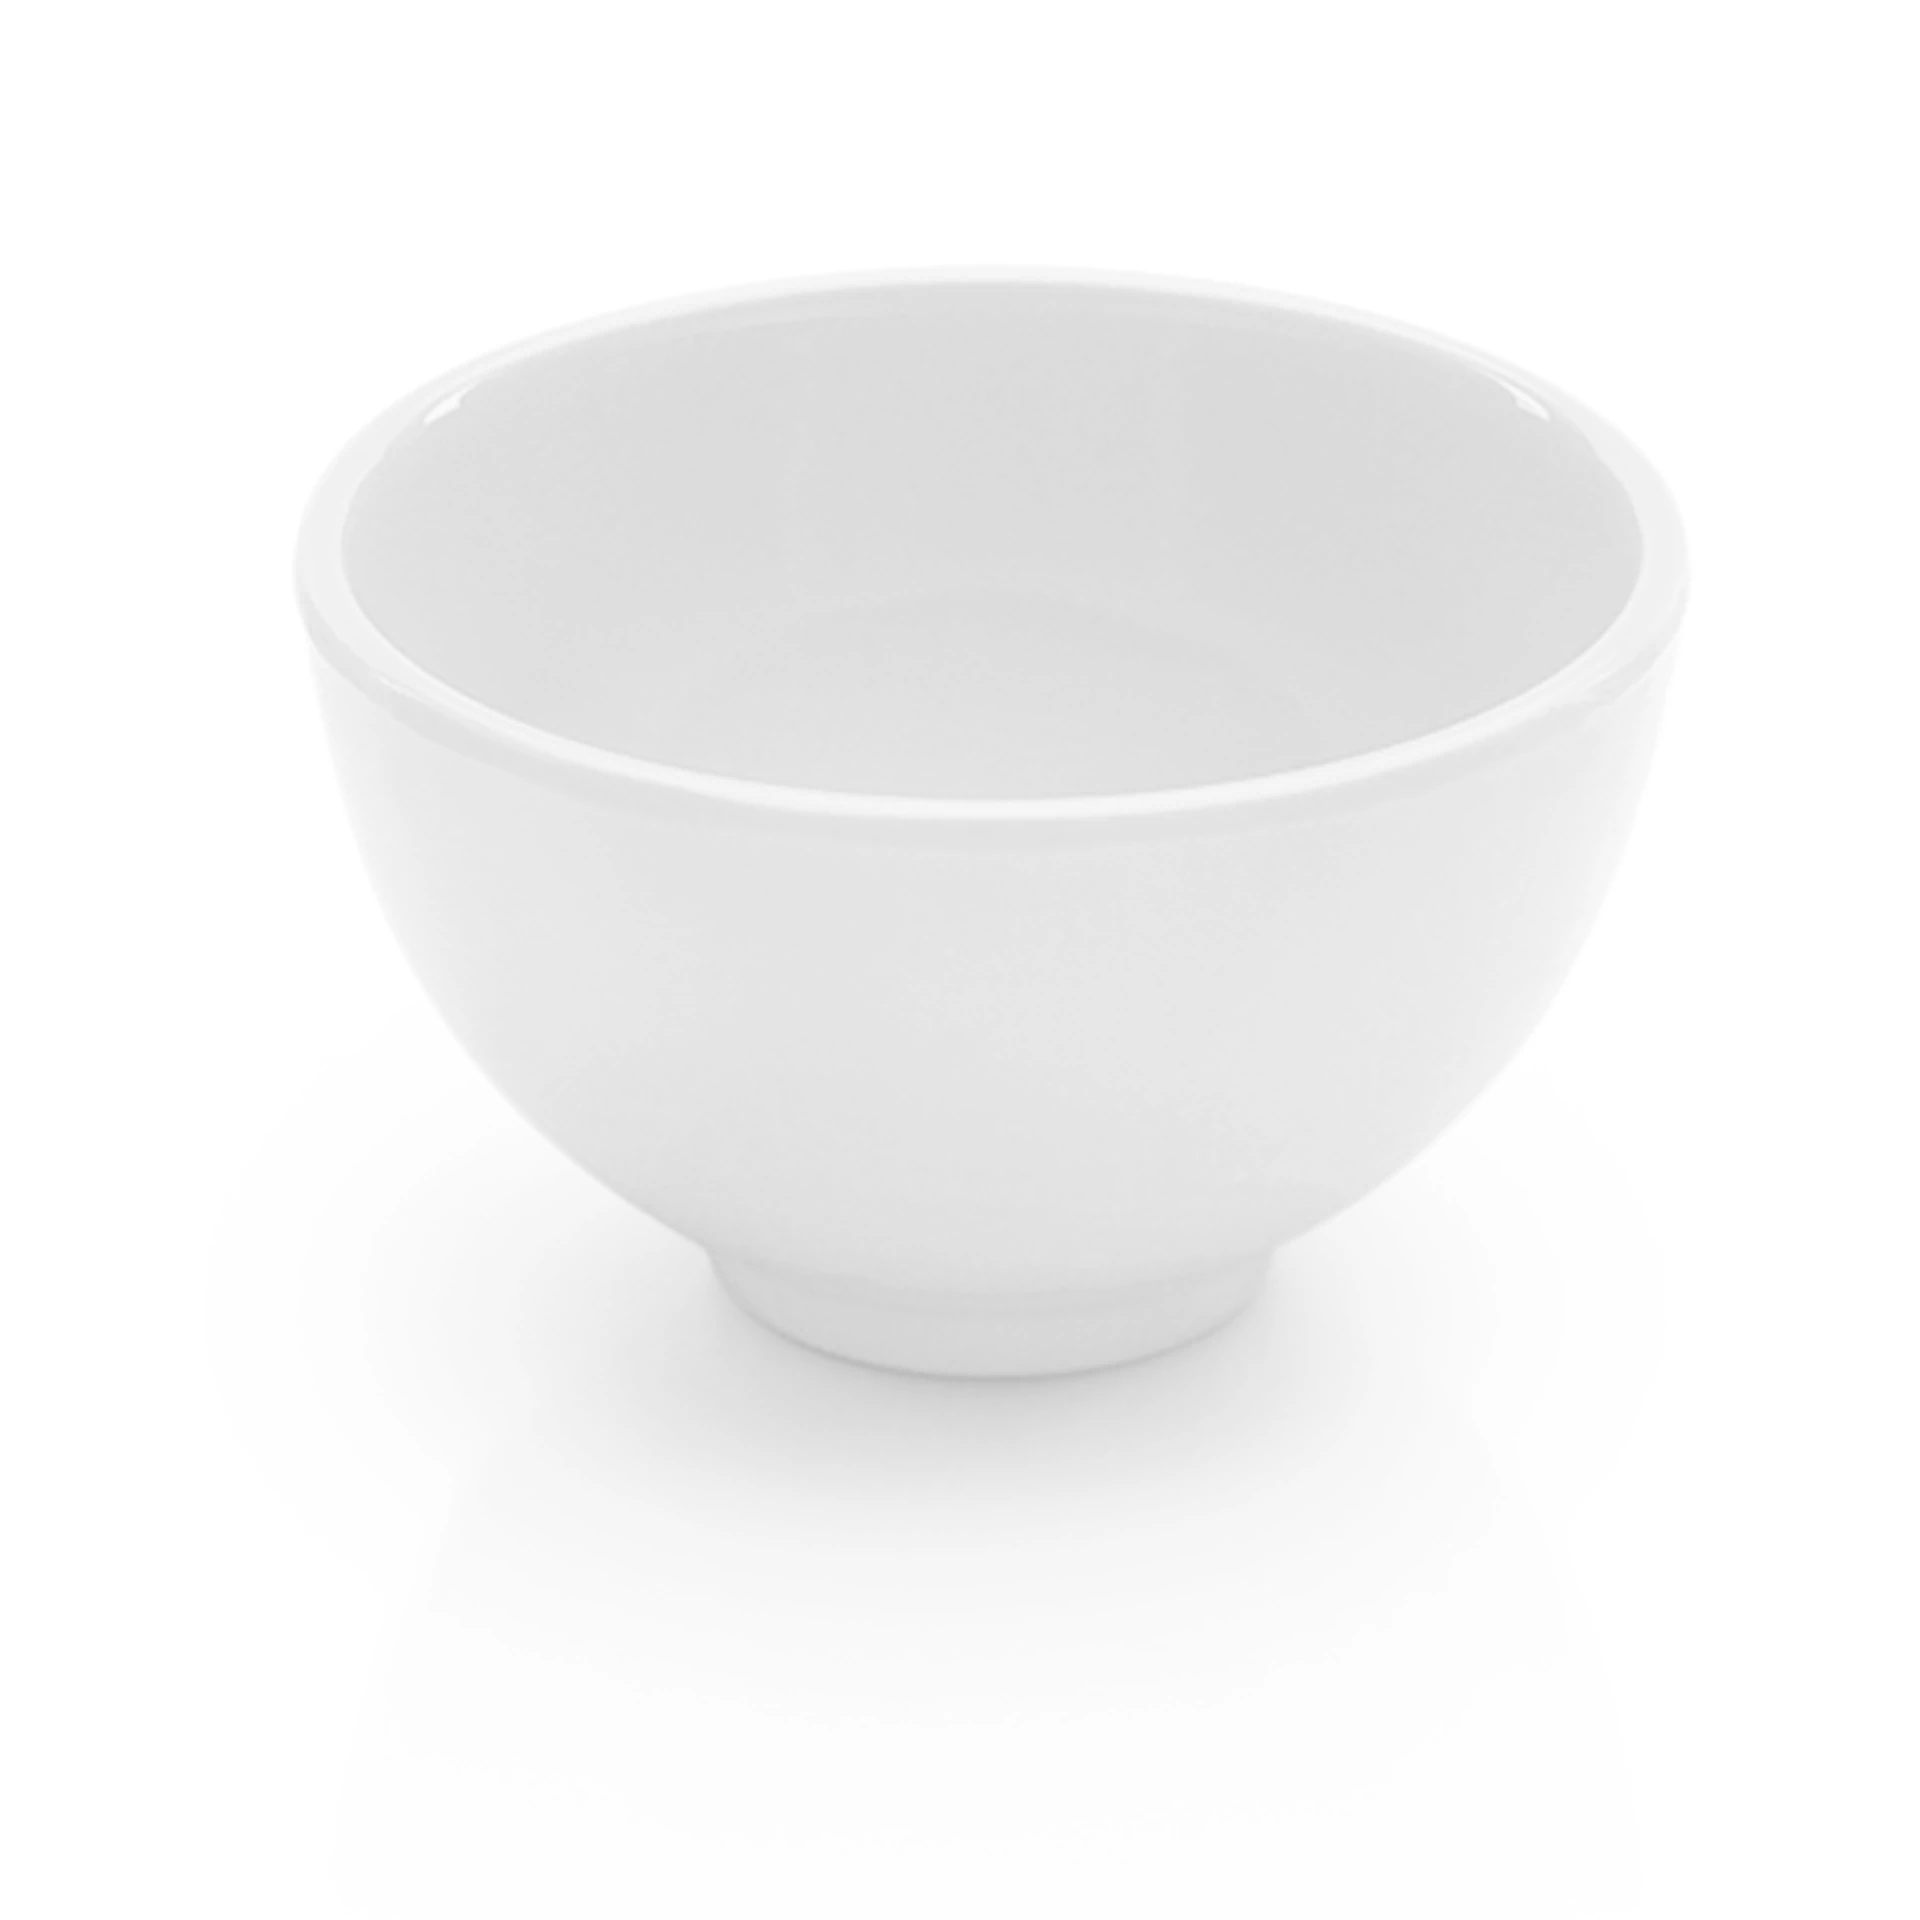 Dipping bowl White